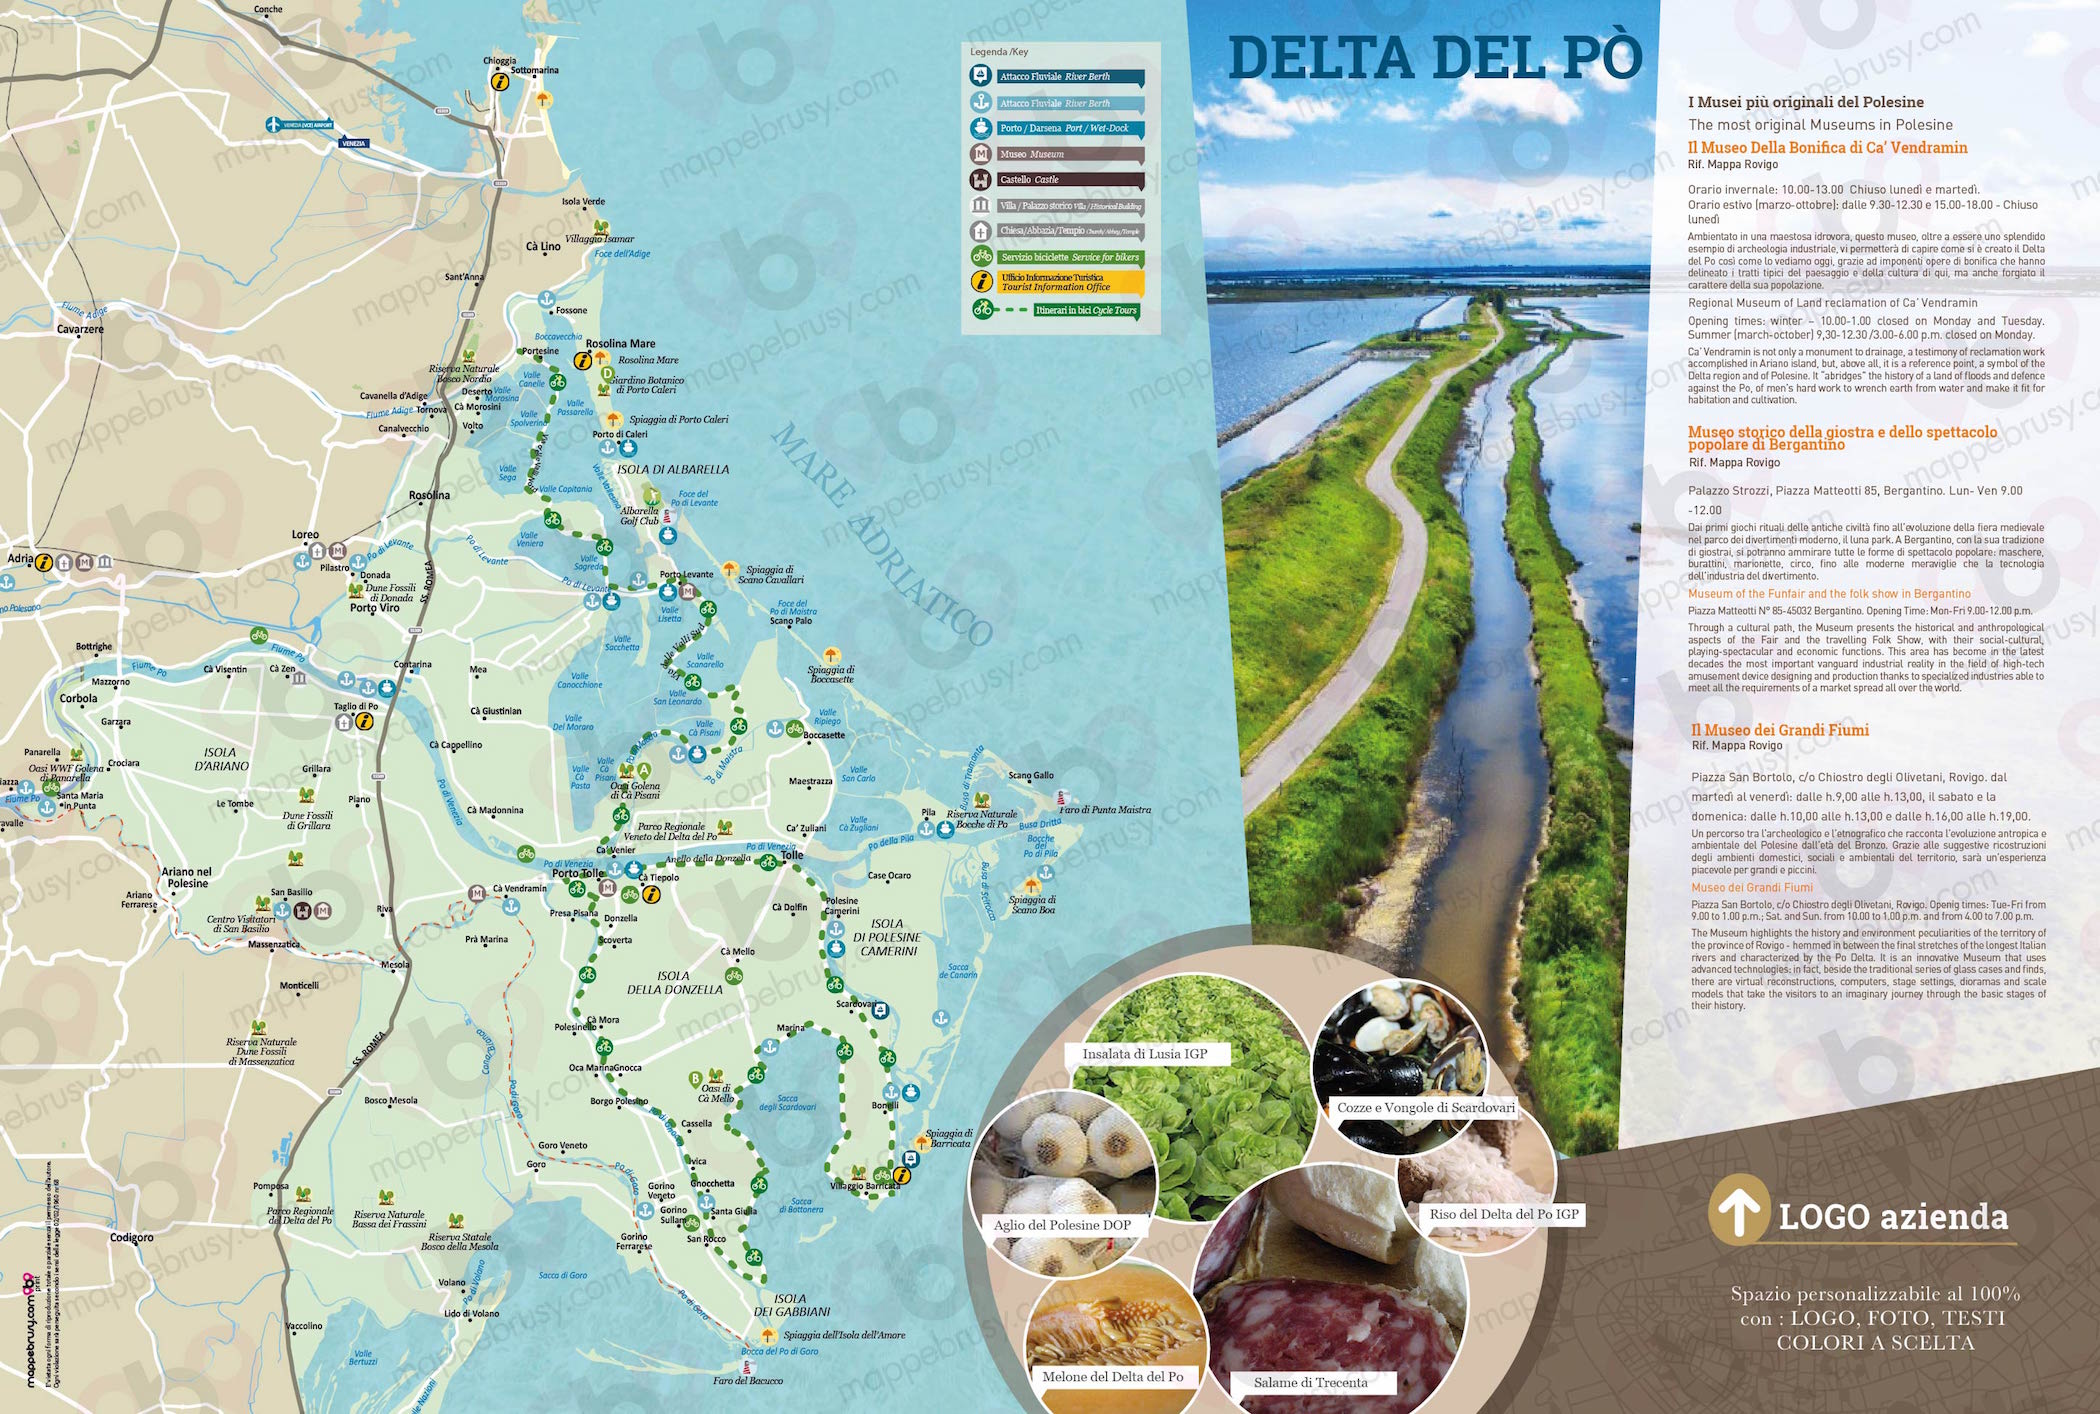 Mappa del Delta del po - Delta del po map - mappa Delta del po - mappa personalizzata Delta del po - mappa tursitica Delta del po